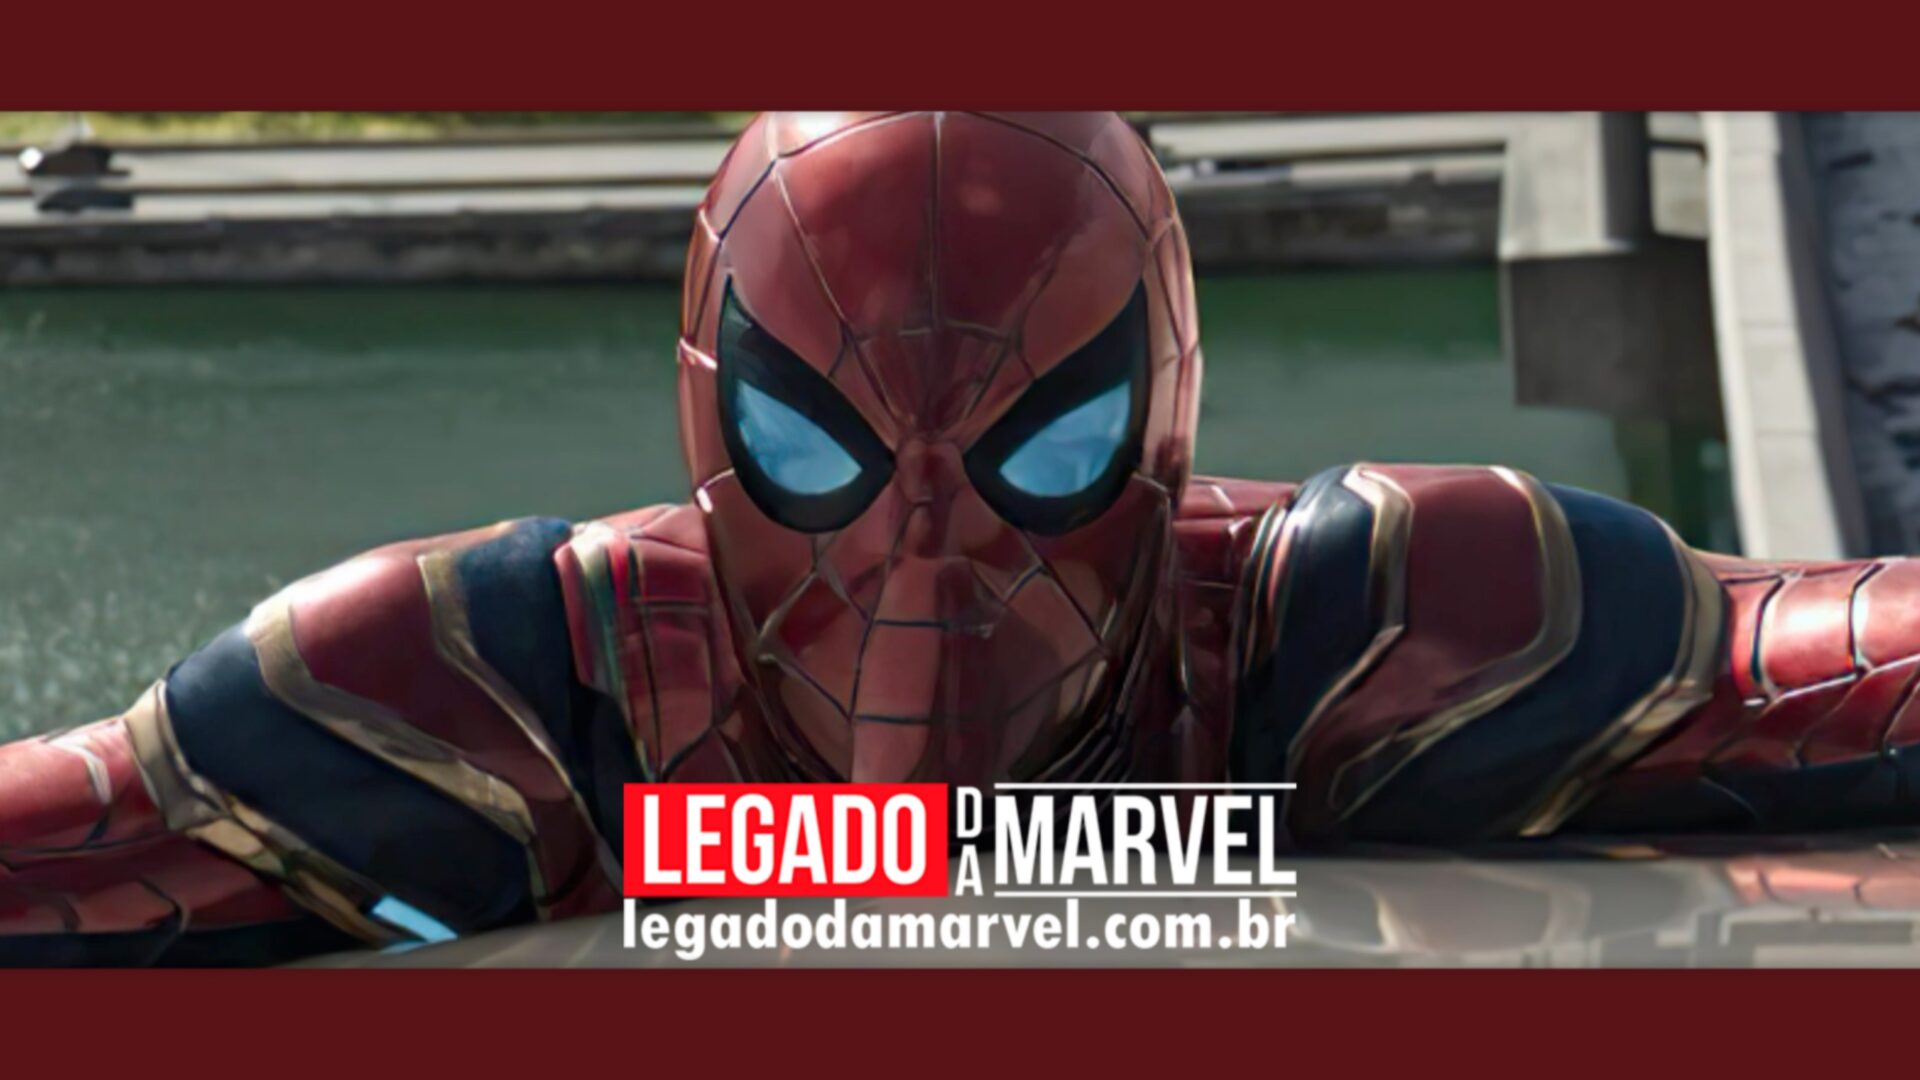  Homem-Aranha 3: Divulgada nova imagem oficial do filme; confira